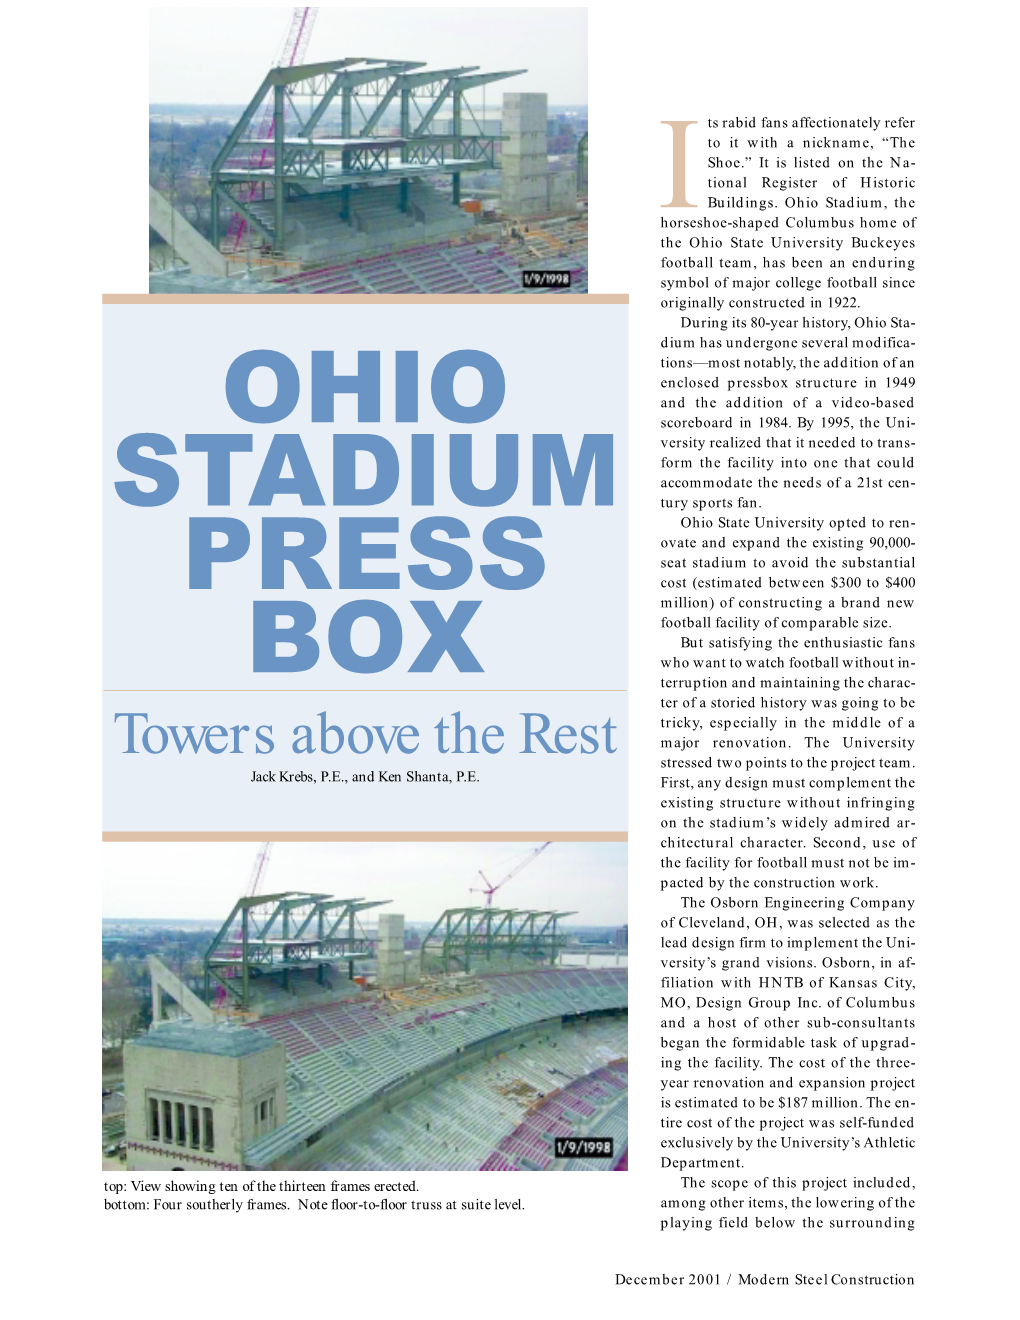 Ohio Stadium Press